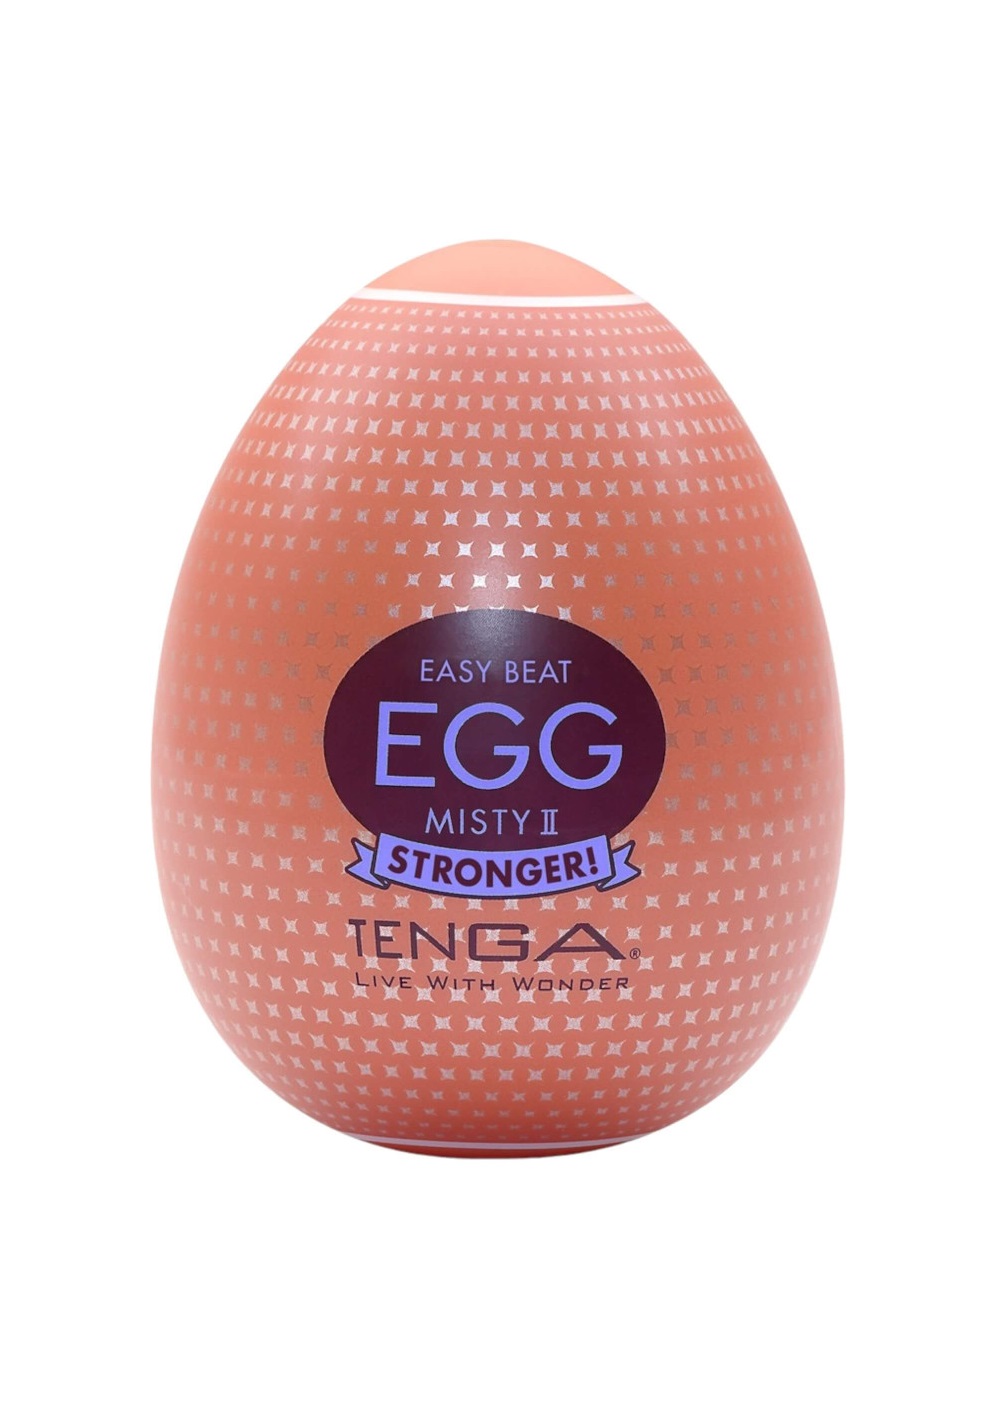 TENGA Egg Misty II Stronger - maszturbációs tojás.